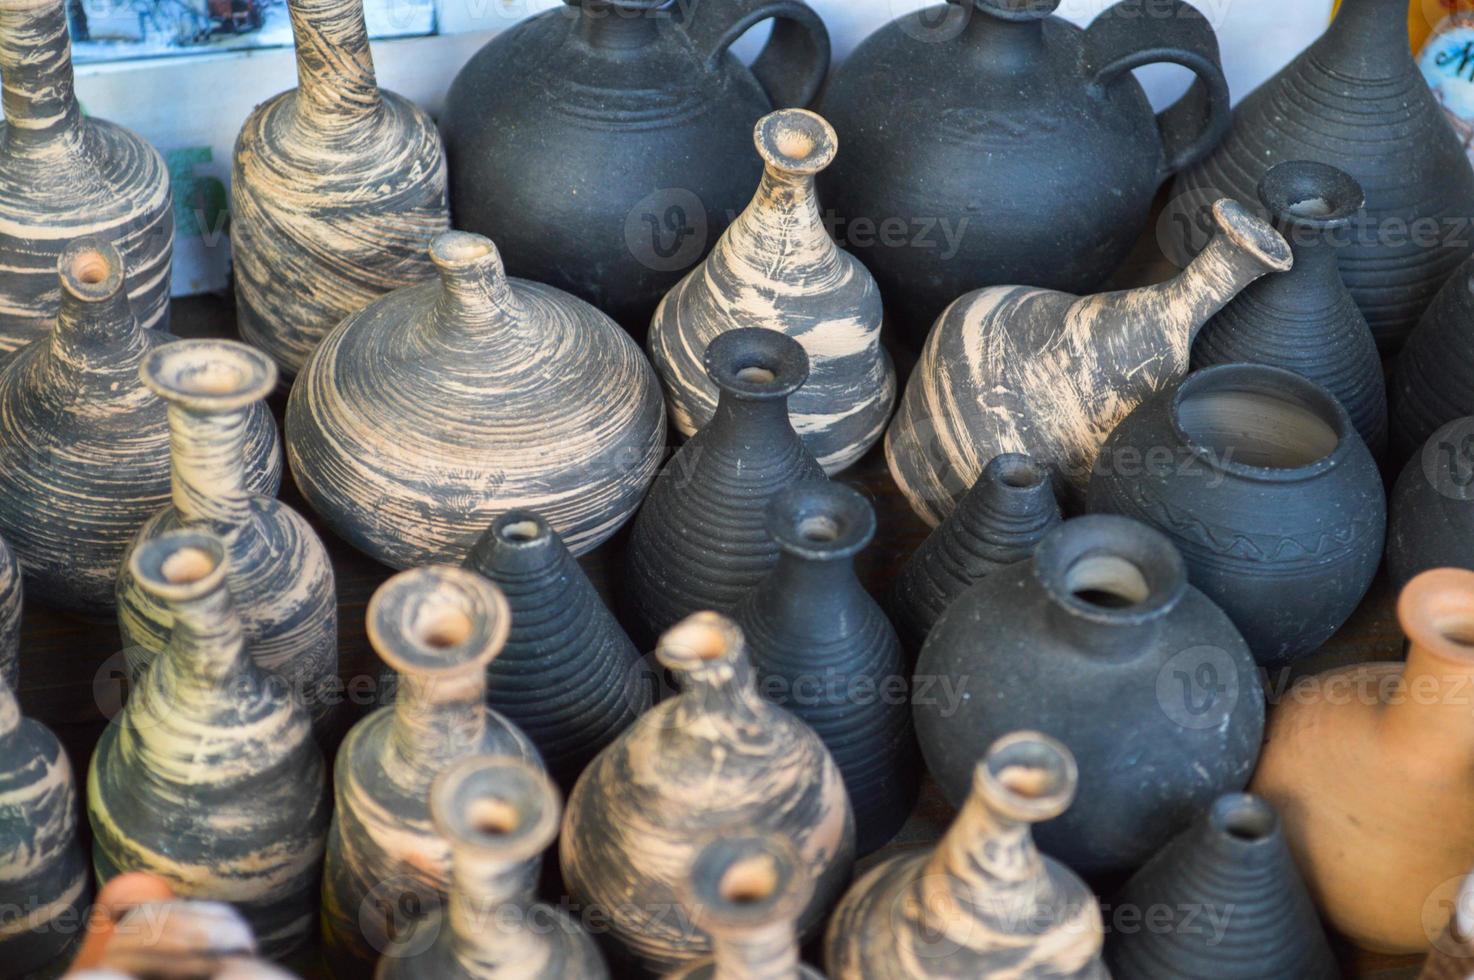 cerâmica de barro tradicional natural belos utensílios de cozinha antigos, pratos, jarros, vasos, potes, canecas. o fundo foto